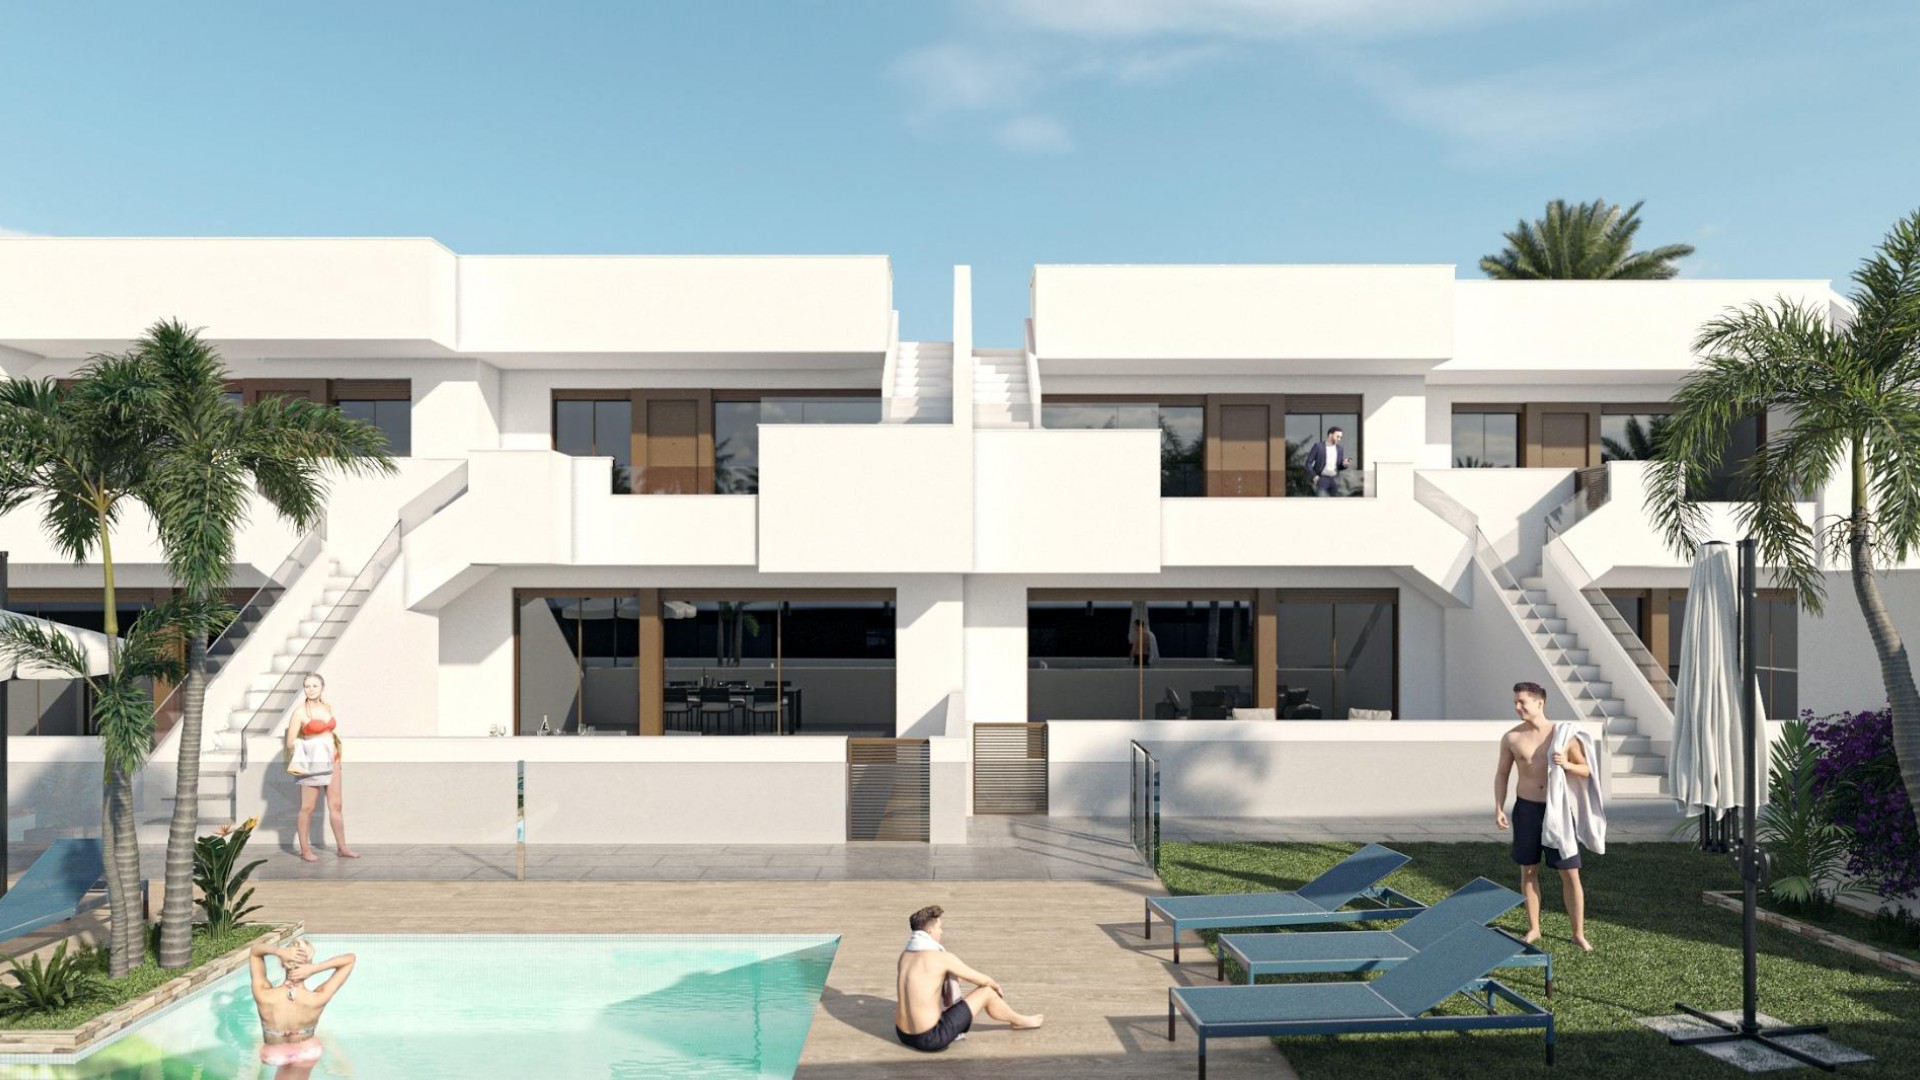 Nye bungalow/leiligheter i Pilar de La Horodada, 2/3 soverom med 2 bad, stor terrasse, veldig stor solarium, felles basseng og hage